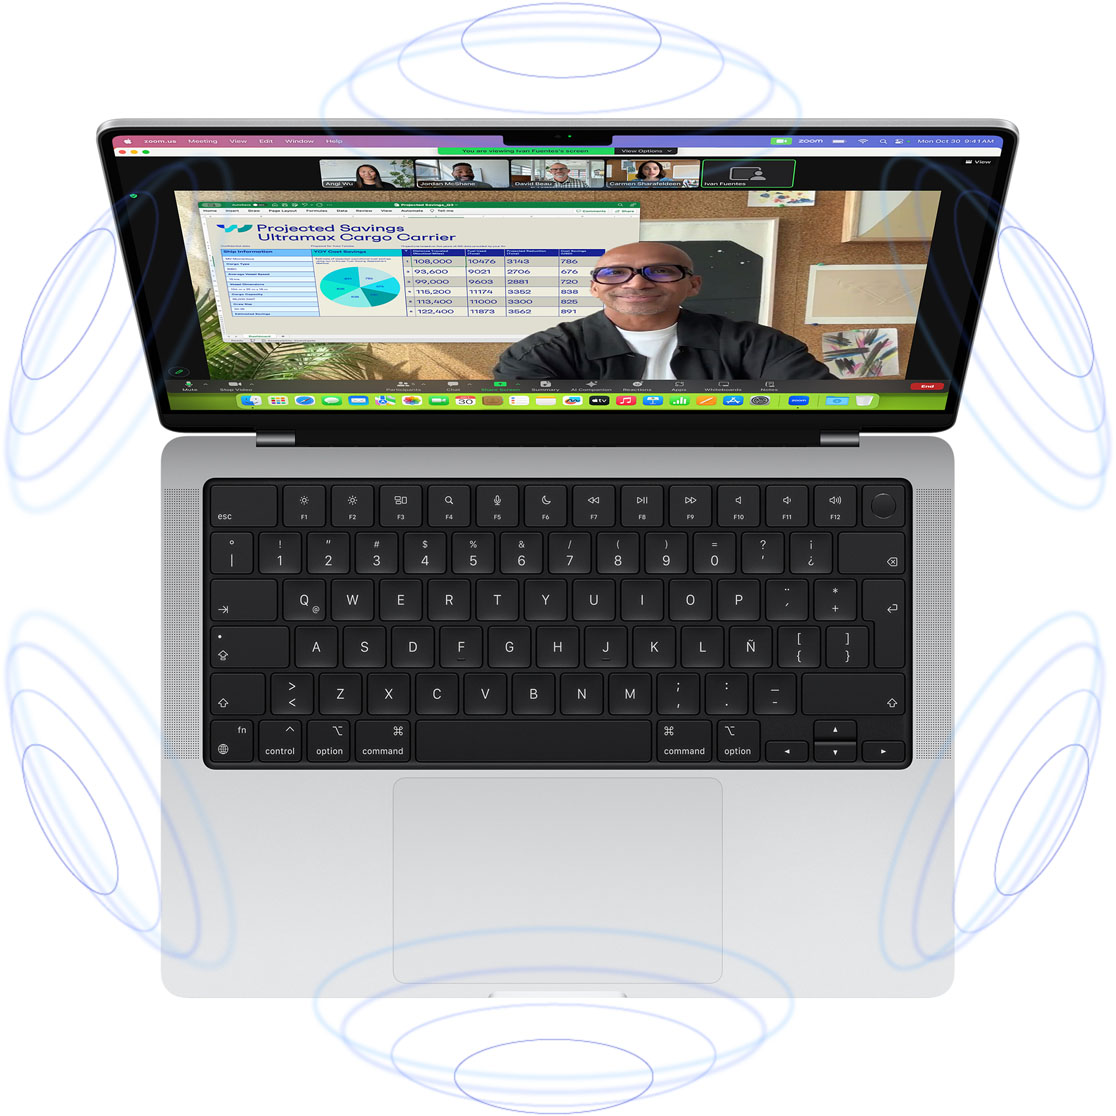 Videollamada de FaceTime en un MacBook Pro, rodeada de dibujos de círculos azules para transmitir la sensación 3D del Audio Espacial